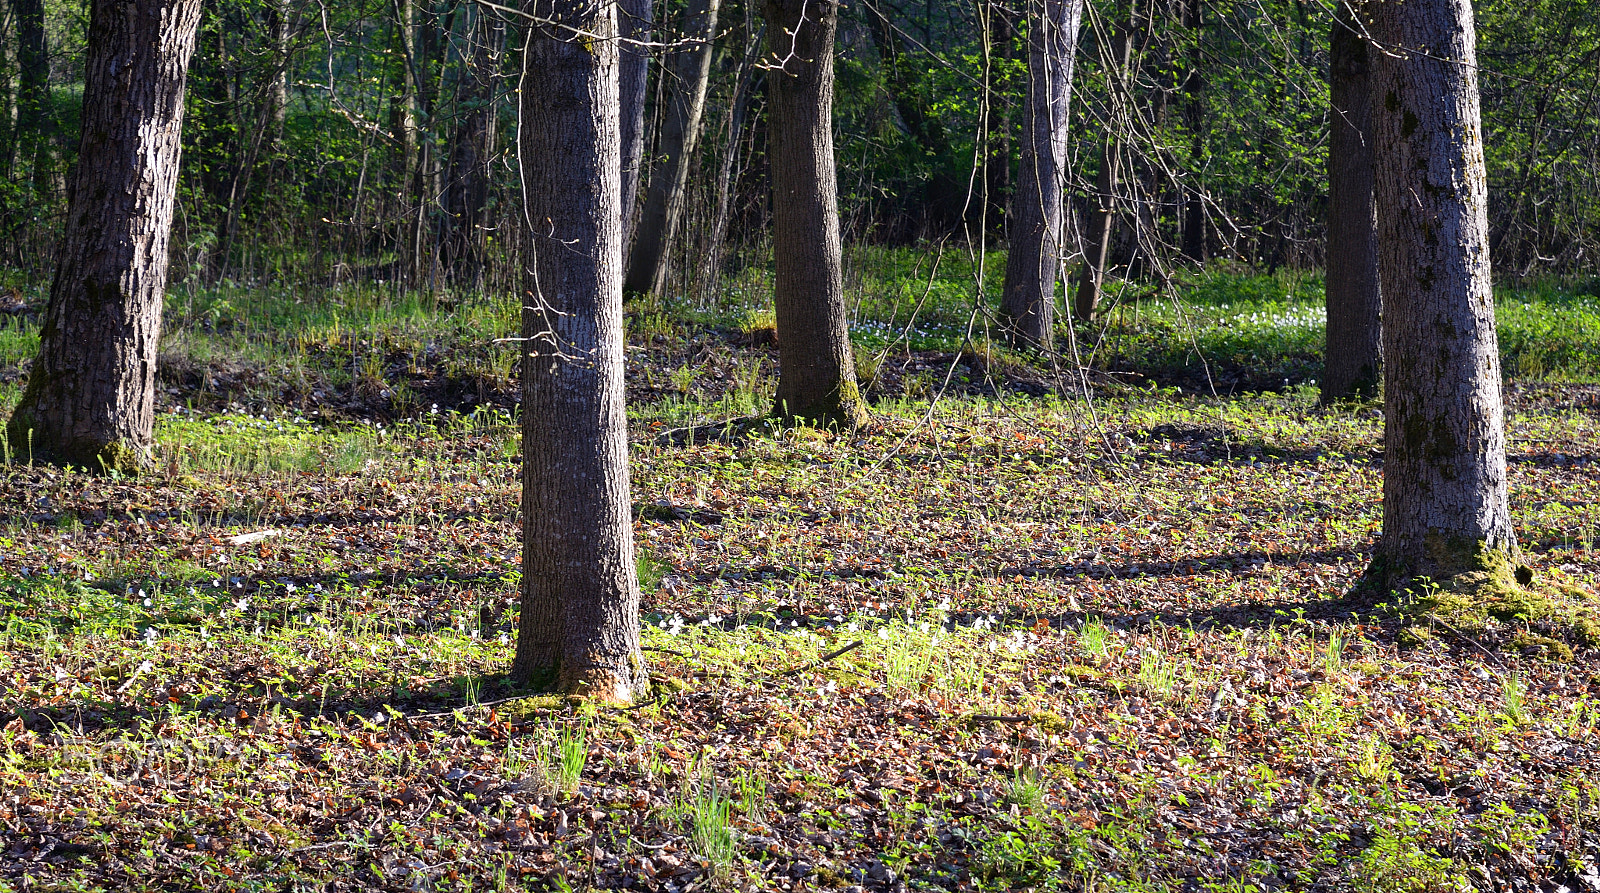 Nikon AF-S Nikkor 24-85mm F3.5-4.5G ED VR sample photo. Landscape in forest at spring. photography